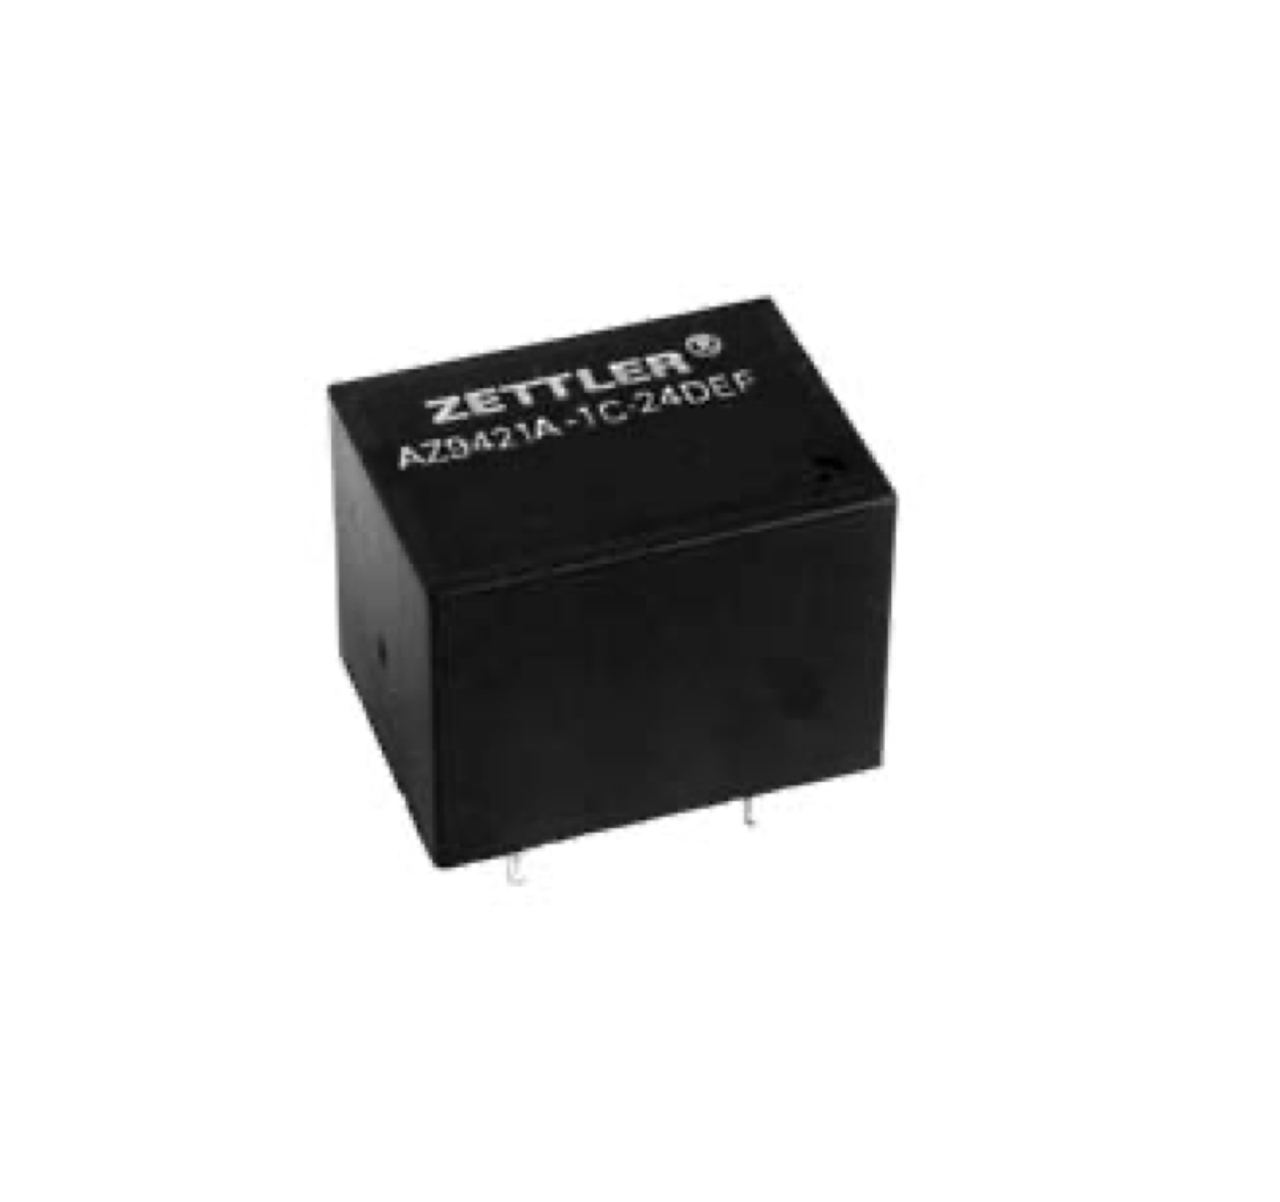 American Zettler AZ9421A-1CT-12DE Power Relay